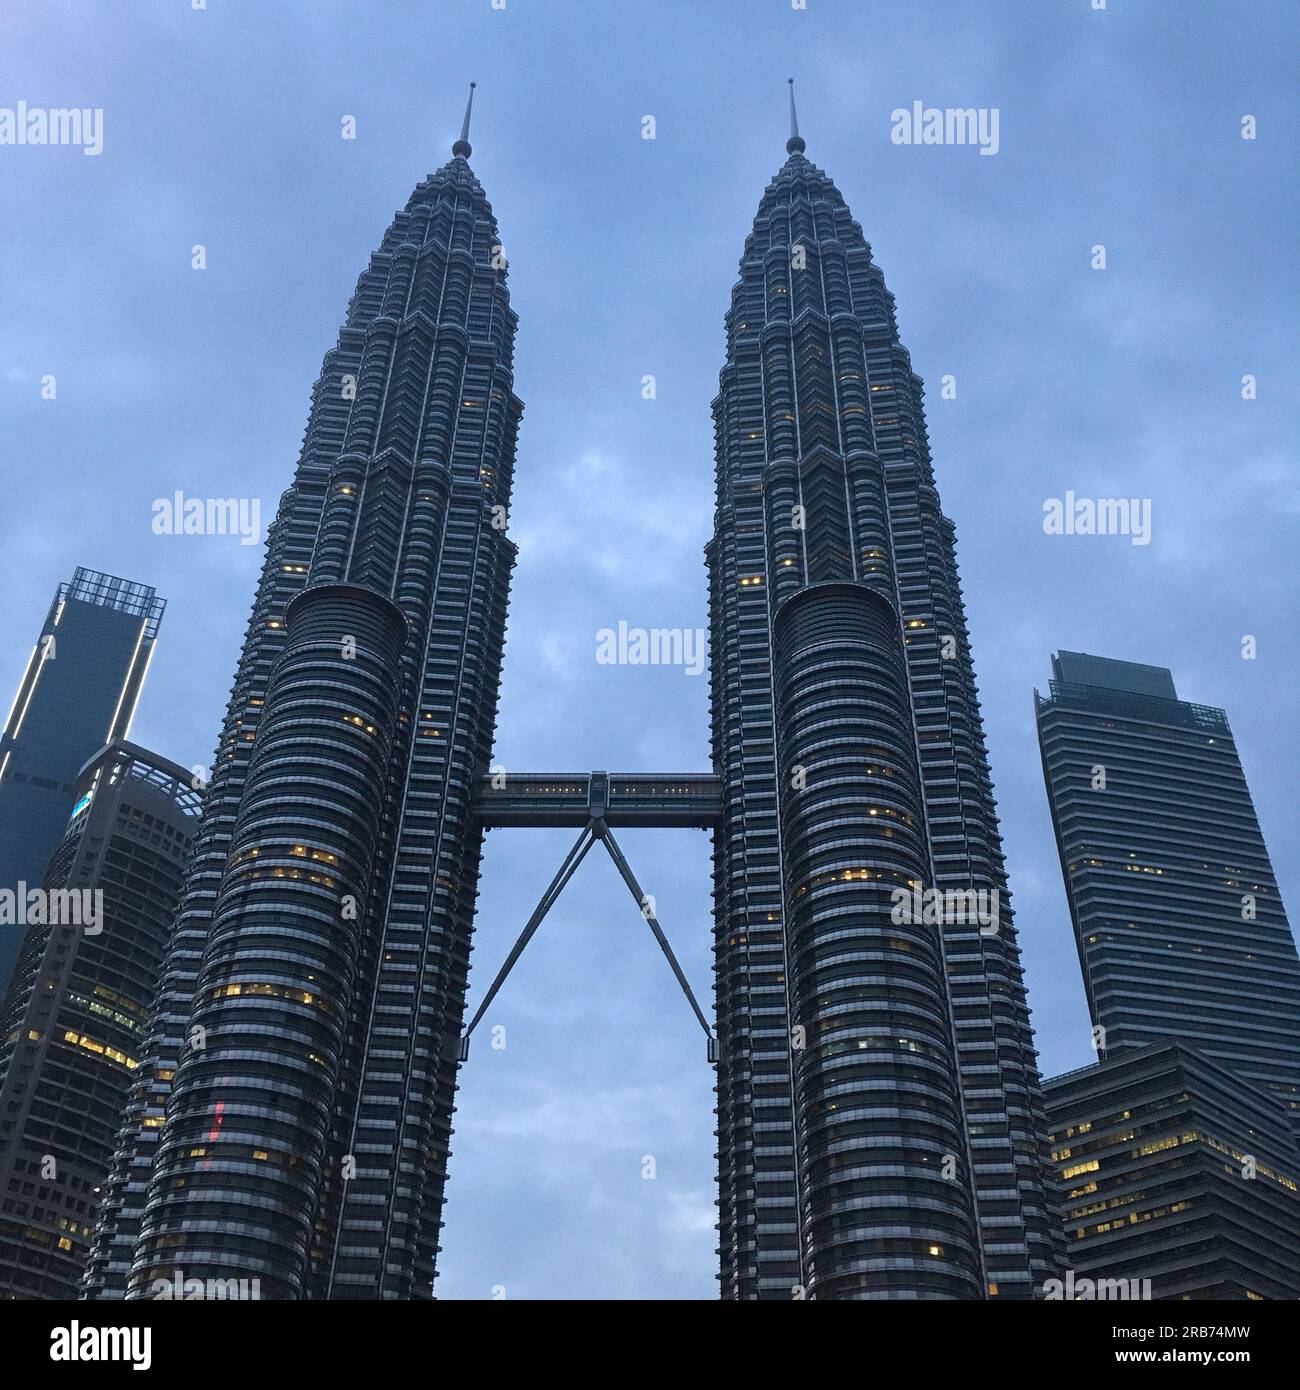 Petronas Twin Tower Kuala Lumpur, Malesia / Torres gemelas Petronas Kuala Lumpur, Malasia / 马来西亚国家石油公司双子塔 吉隆坡 Foto Stock